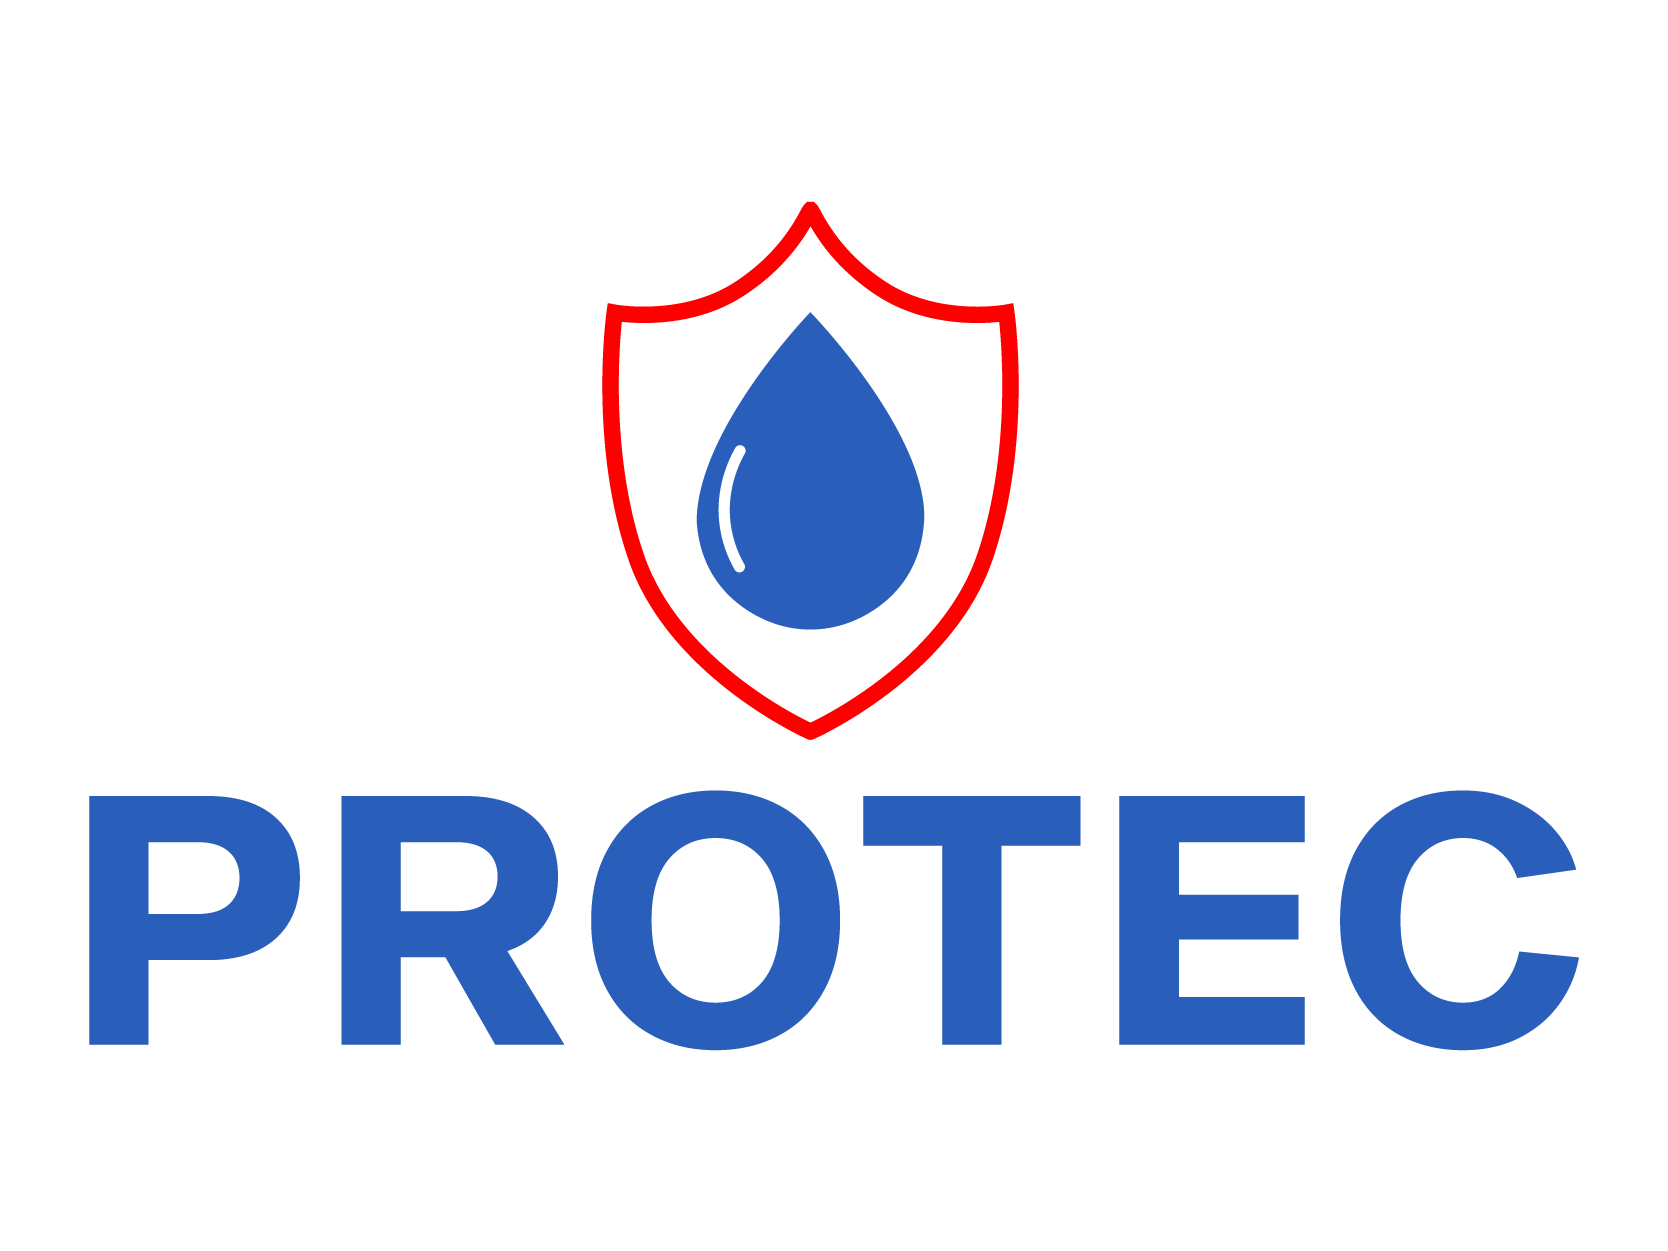 Protec-01